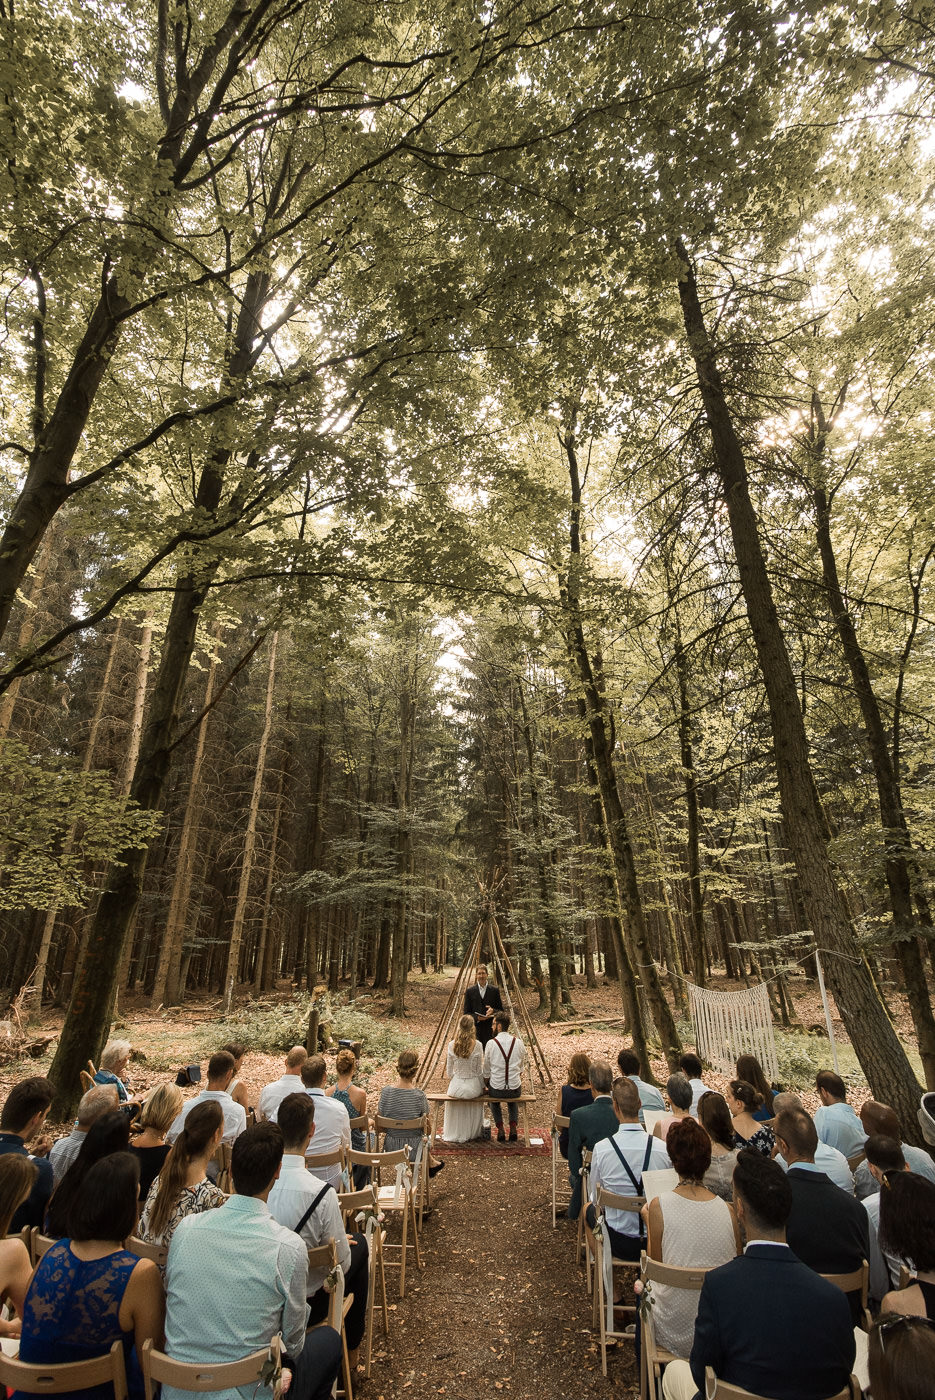 Trauung in Wald bei Waldhochzeit mit Trauredner und Hochzeitsgästen in schwäbischen Wald